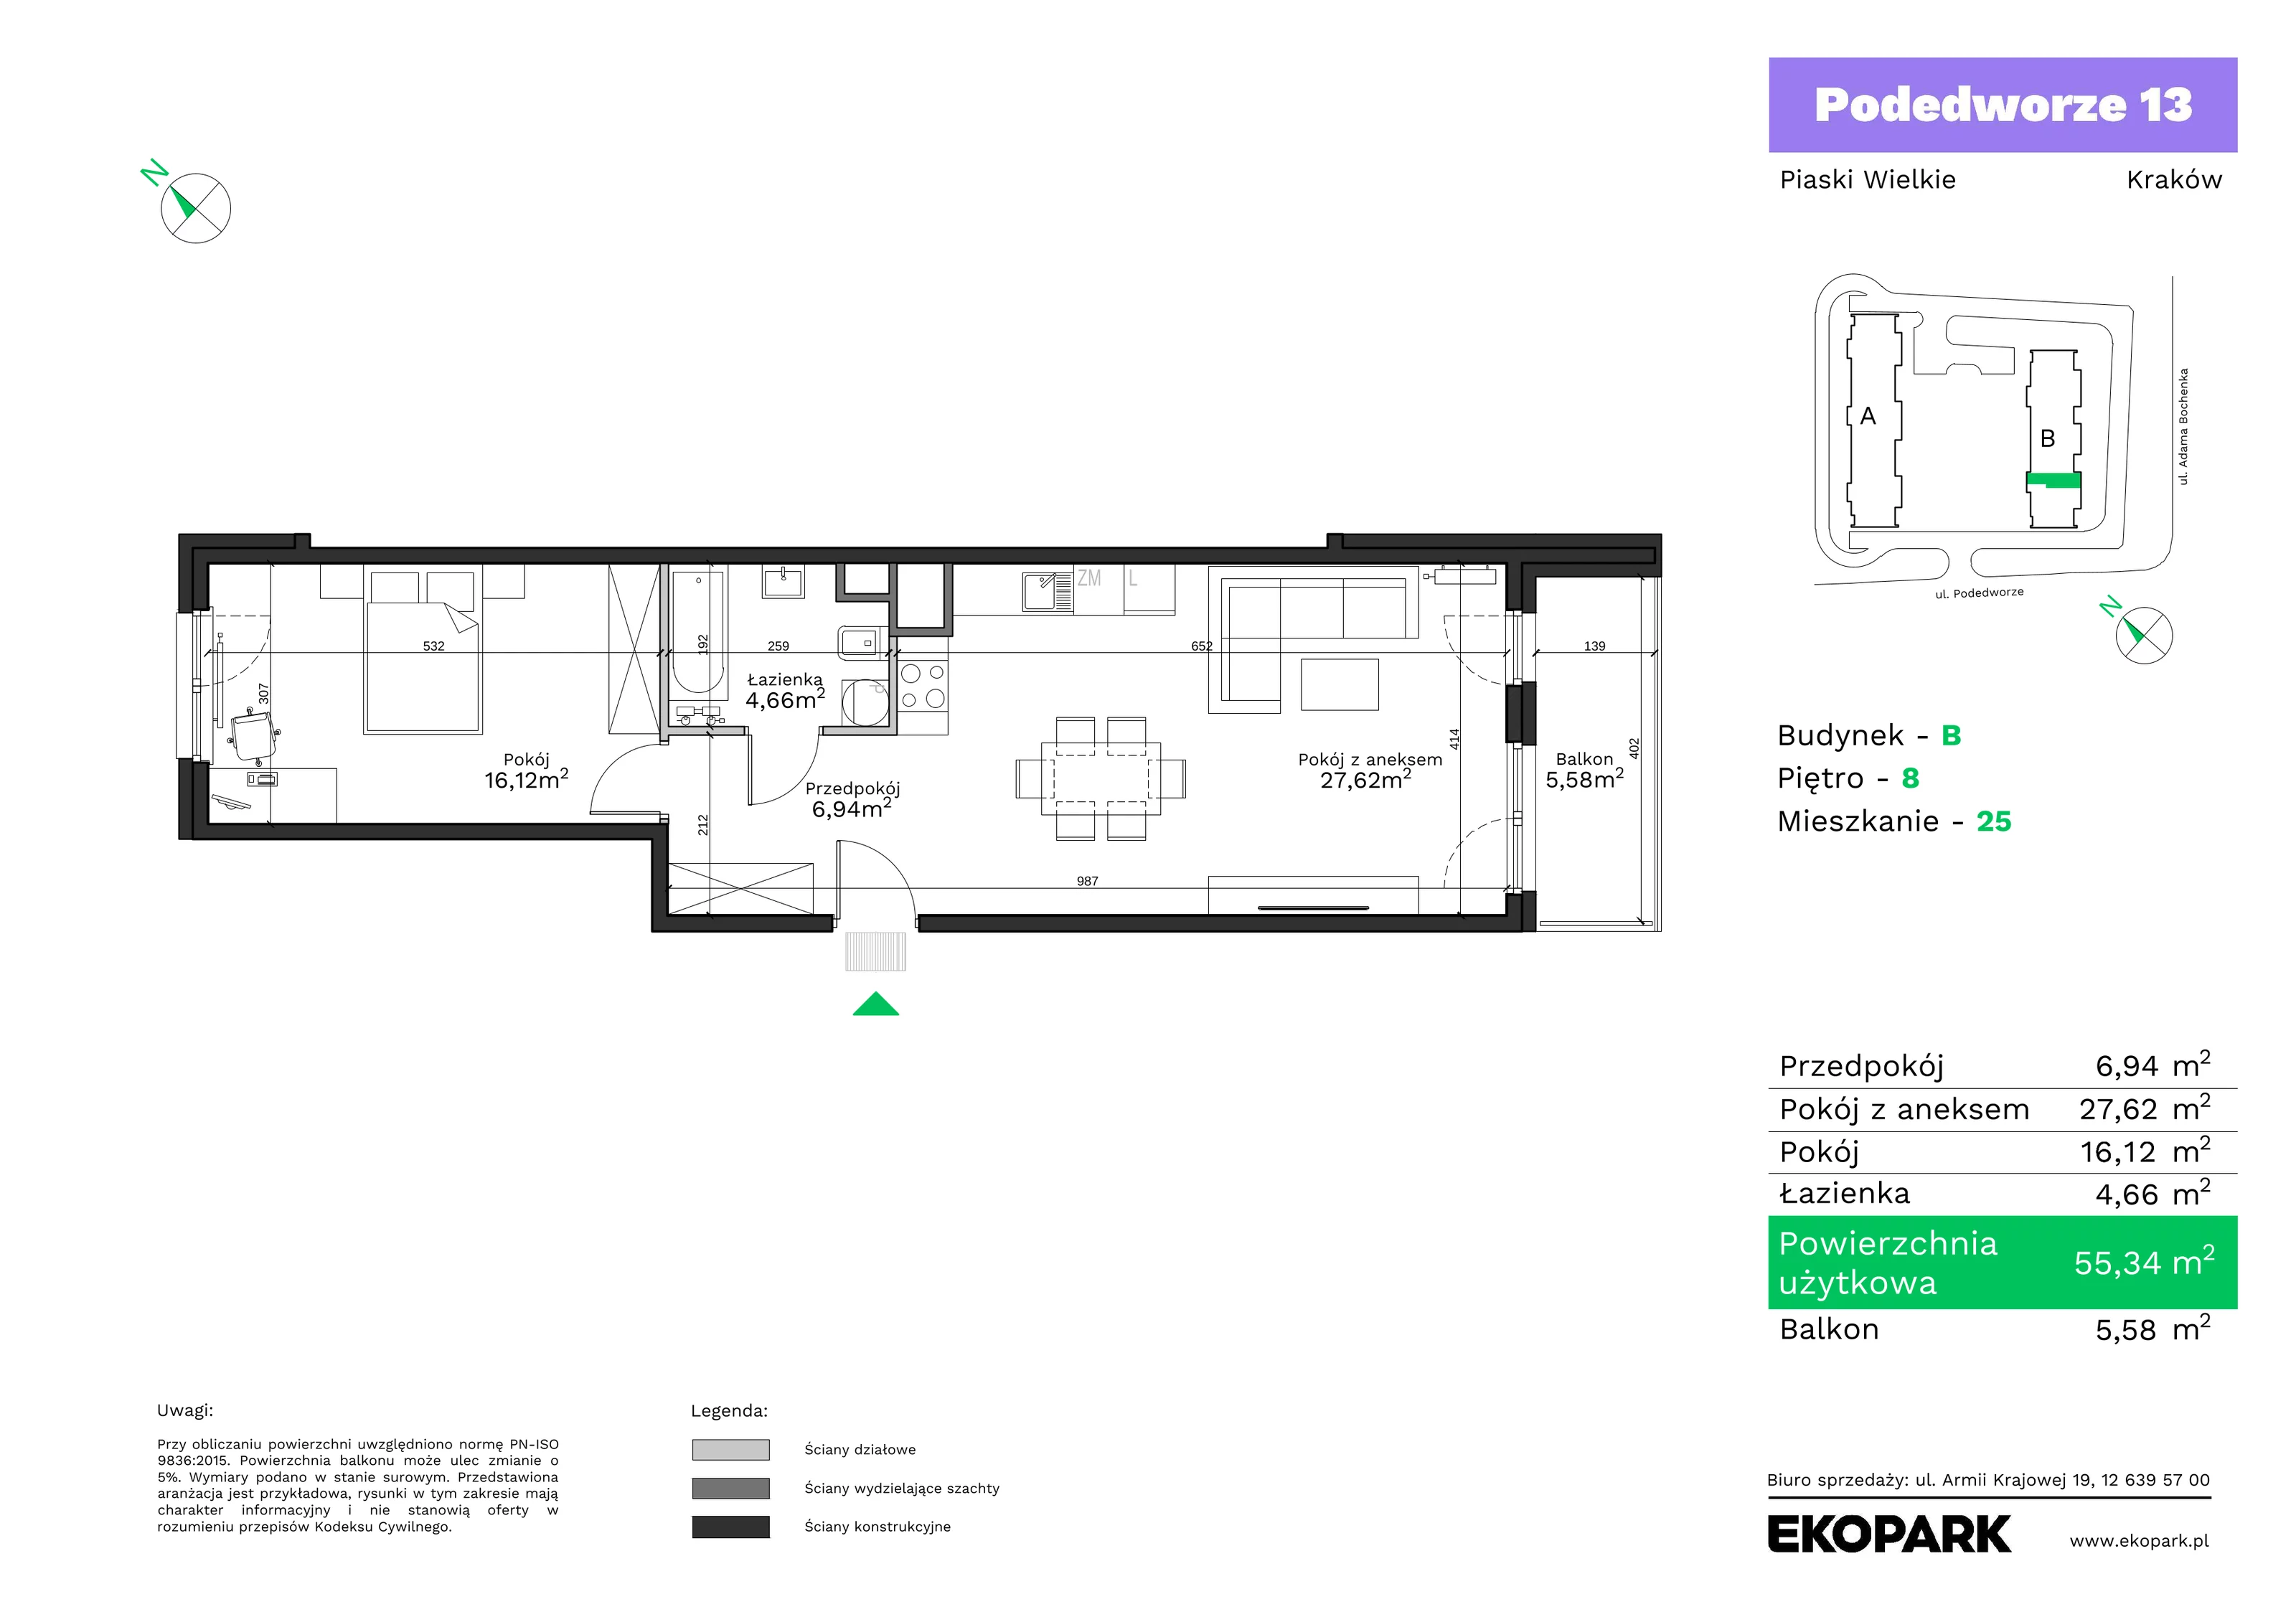 Mieszkanie 55,34 m², piętro 8, oferta nr B25, Podedworze 13, Kraków, Podgórze Duchackie, Piaski Wielkie, ul. Podedworze 13